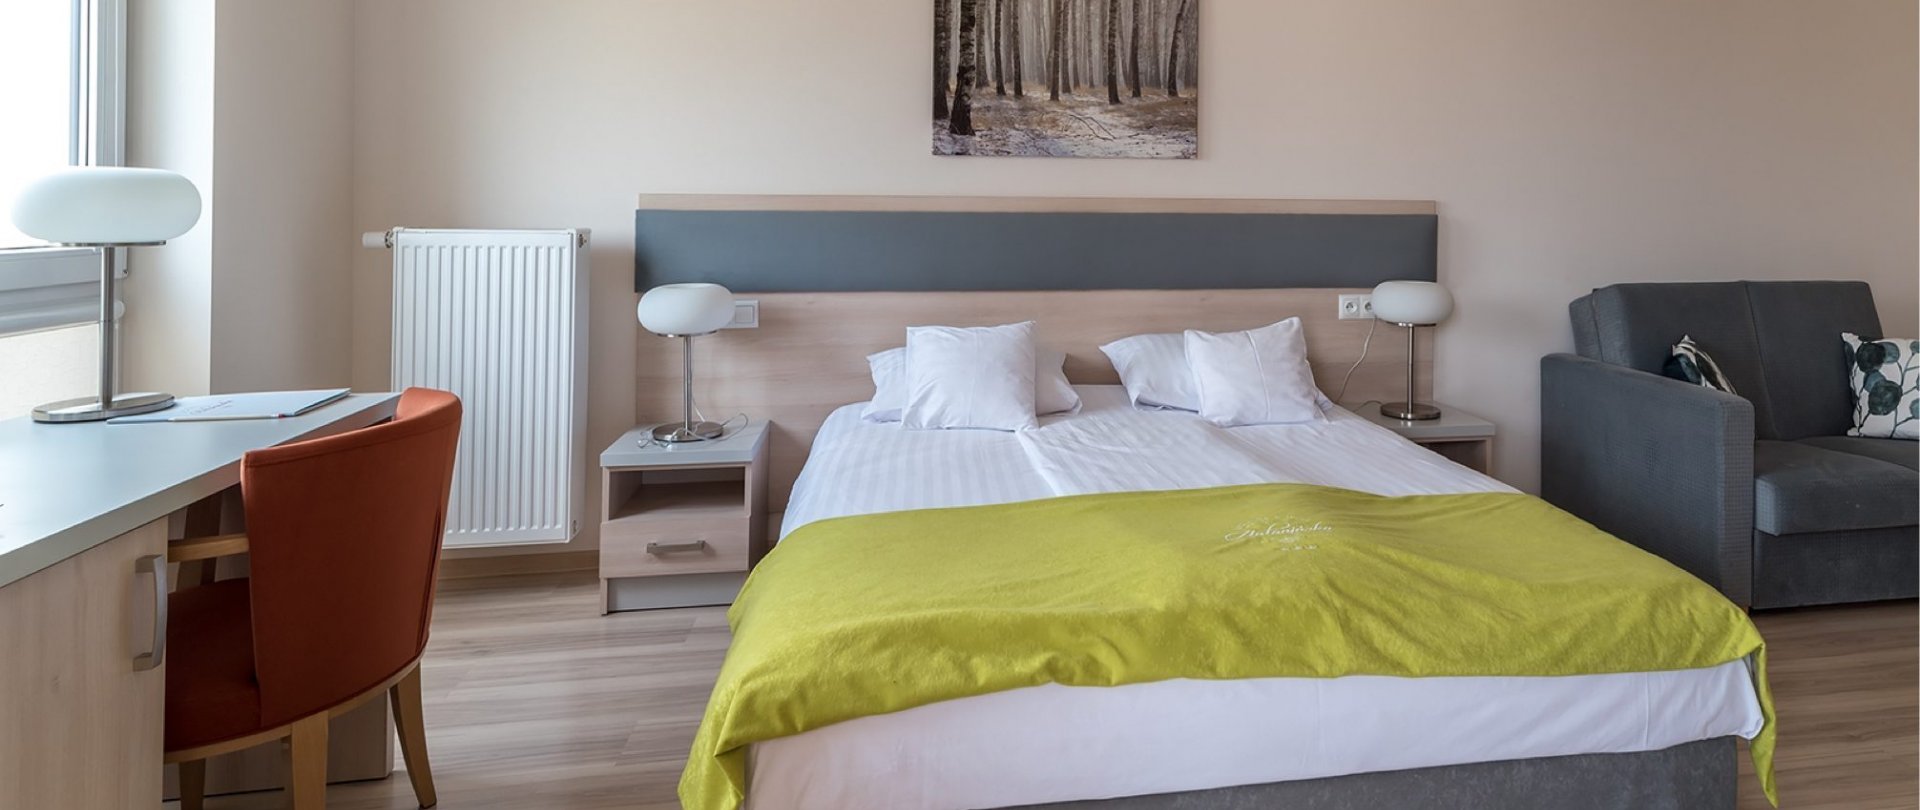 Higiena snu – jak wyspać się w hotelu?